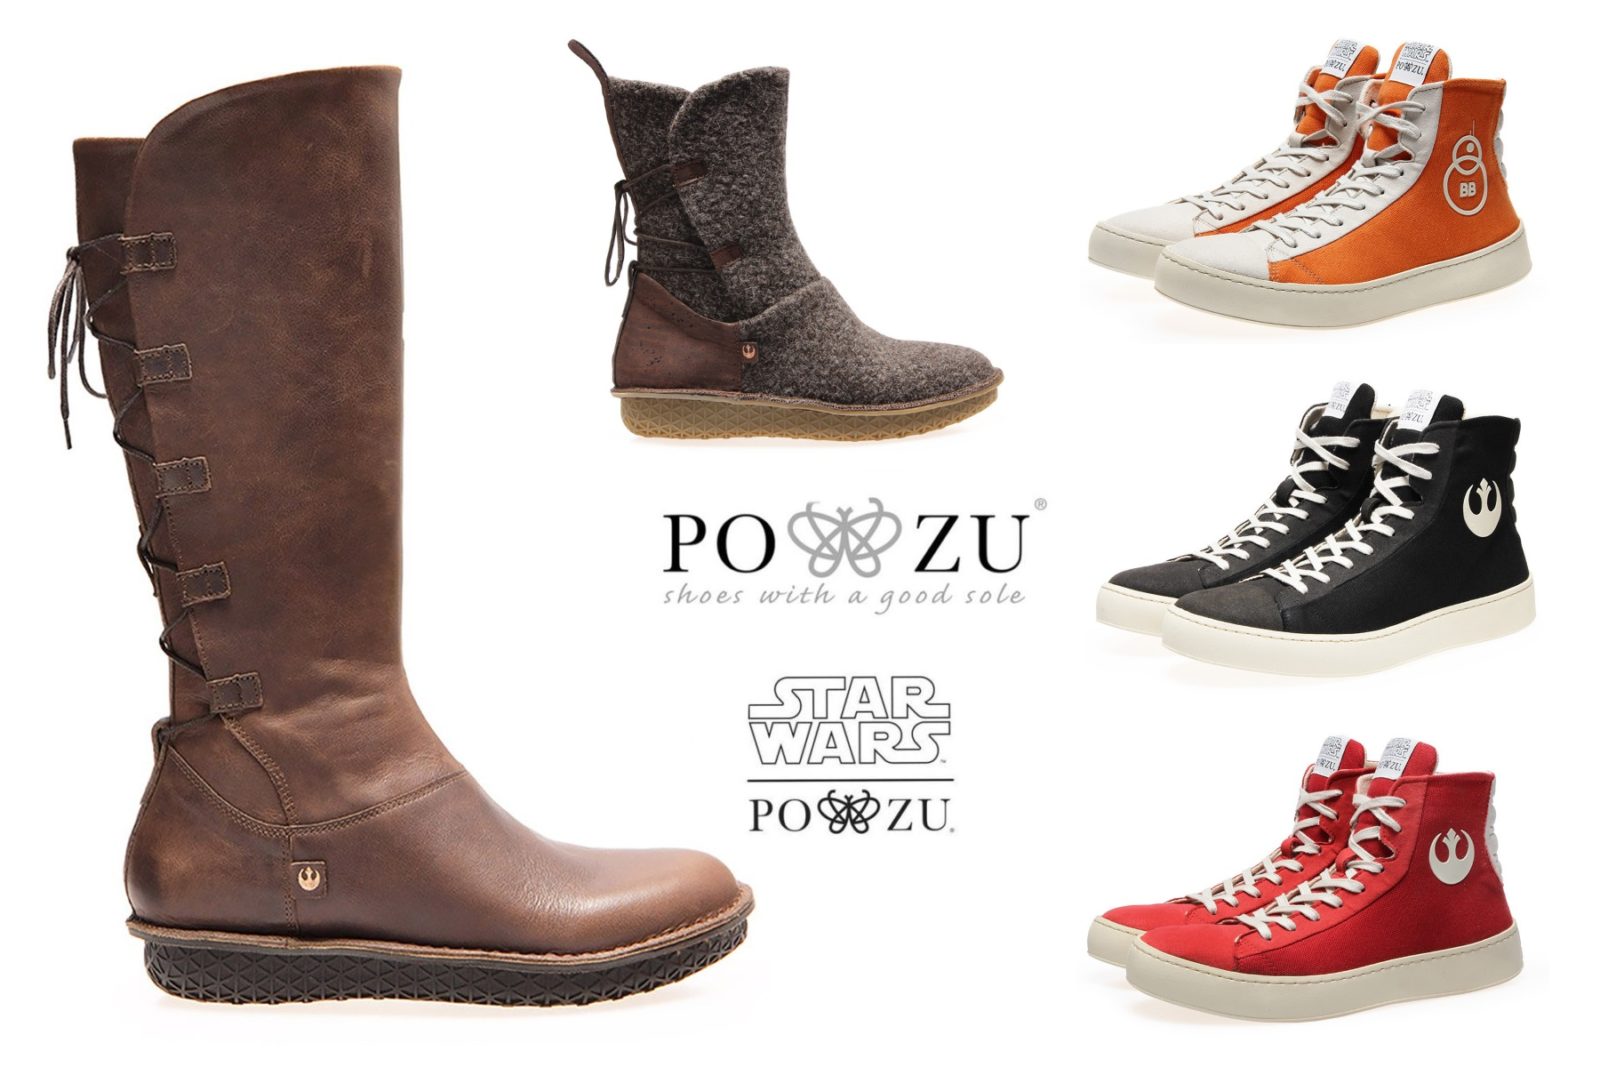 po zu star wars shoes